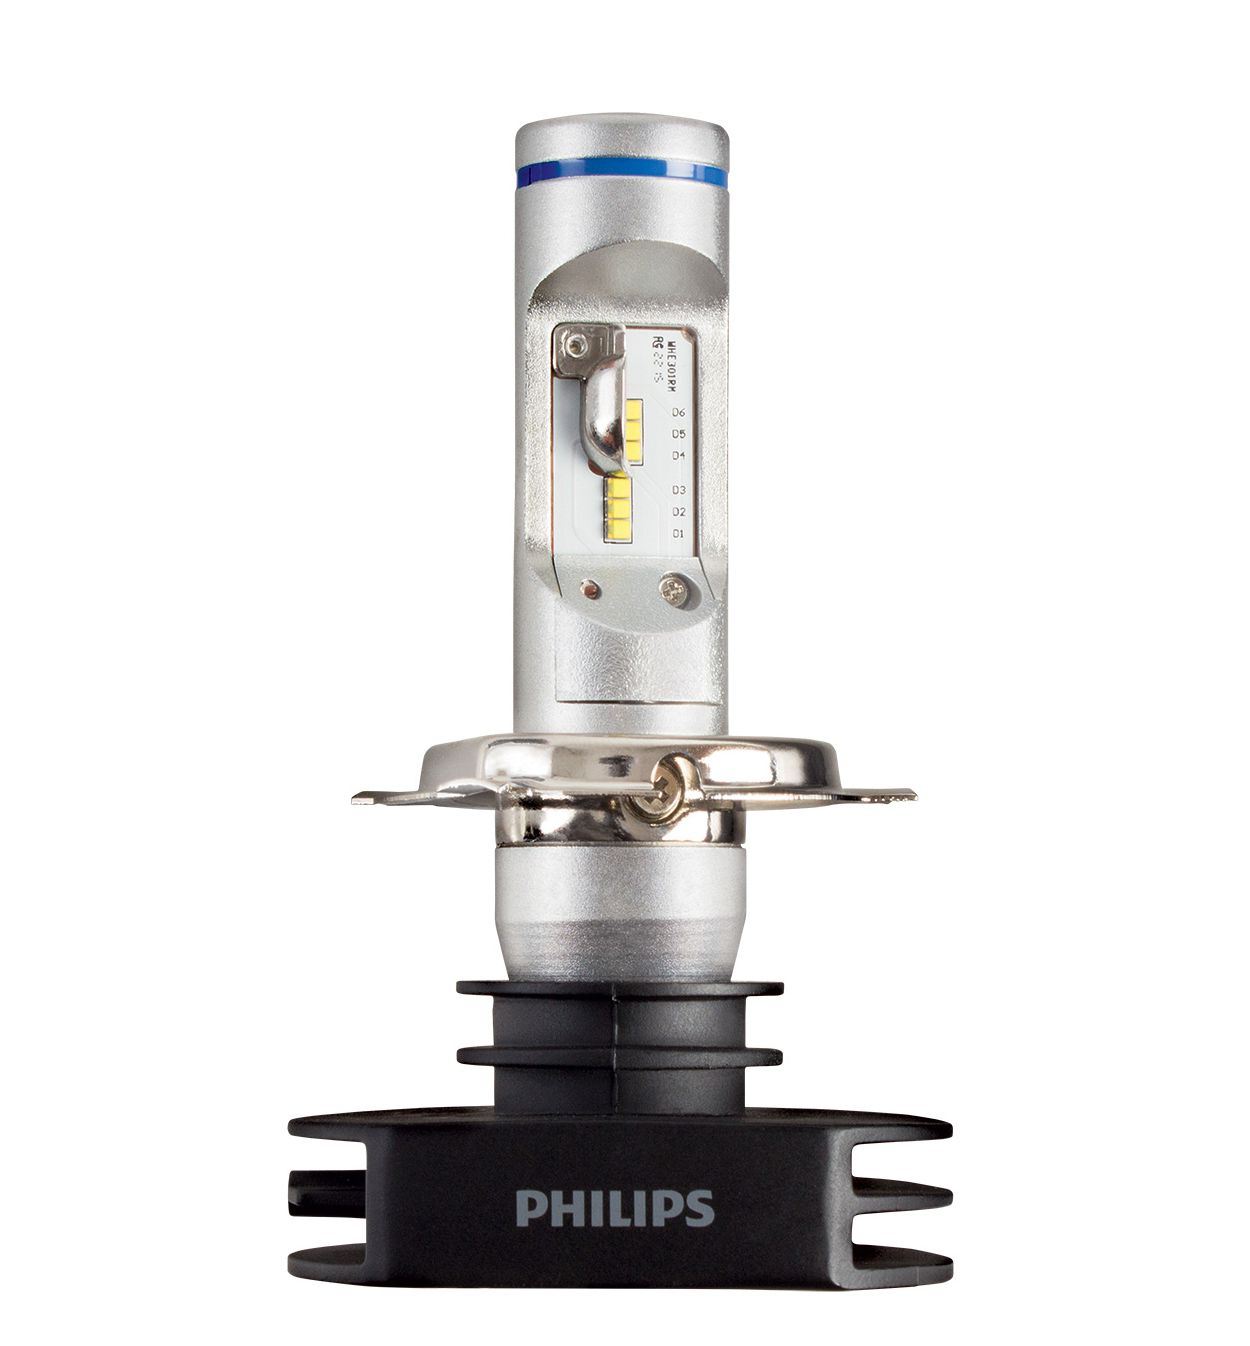 Philips H4.Standard autolampen set, 12 Volt